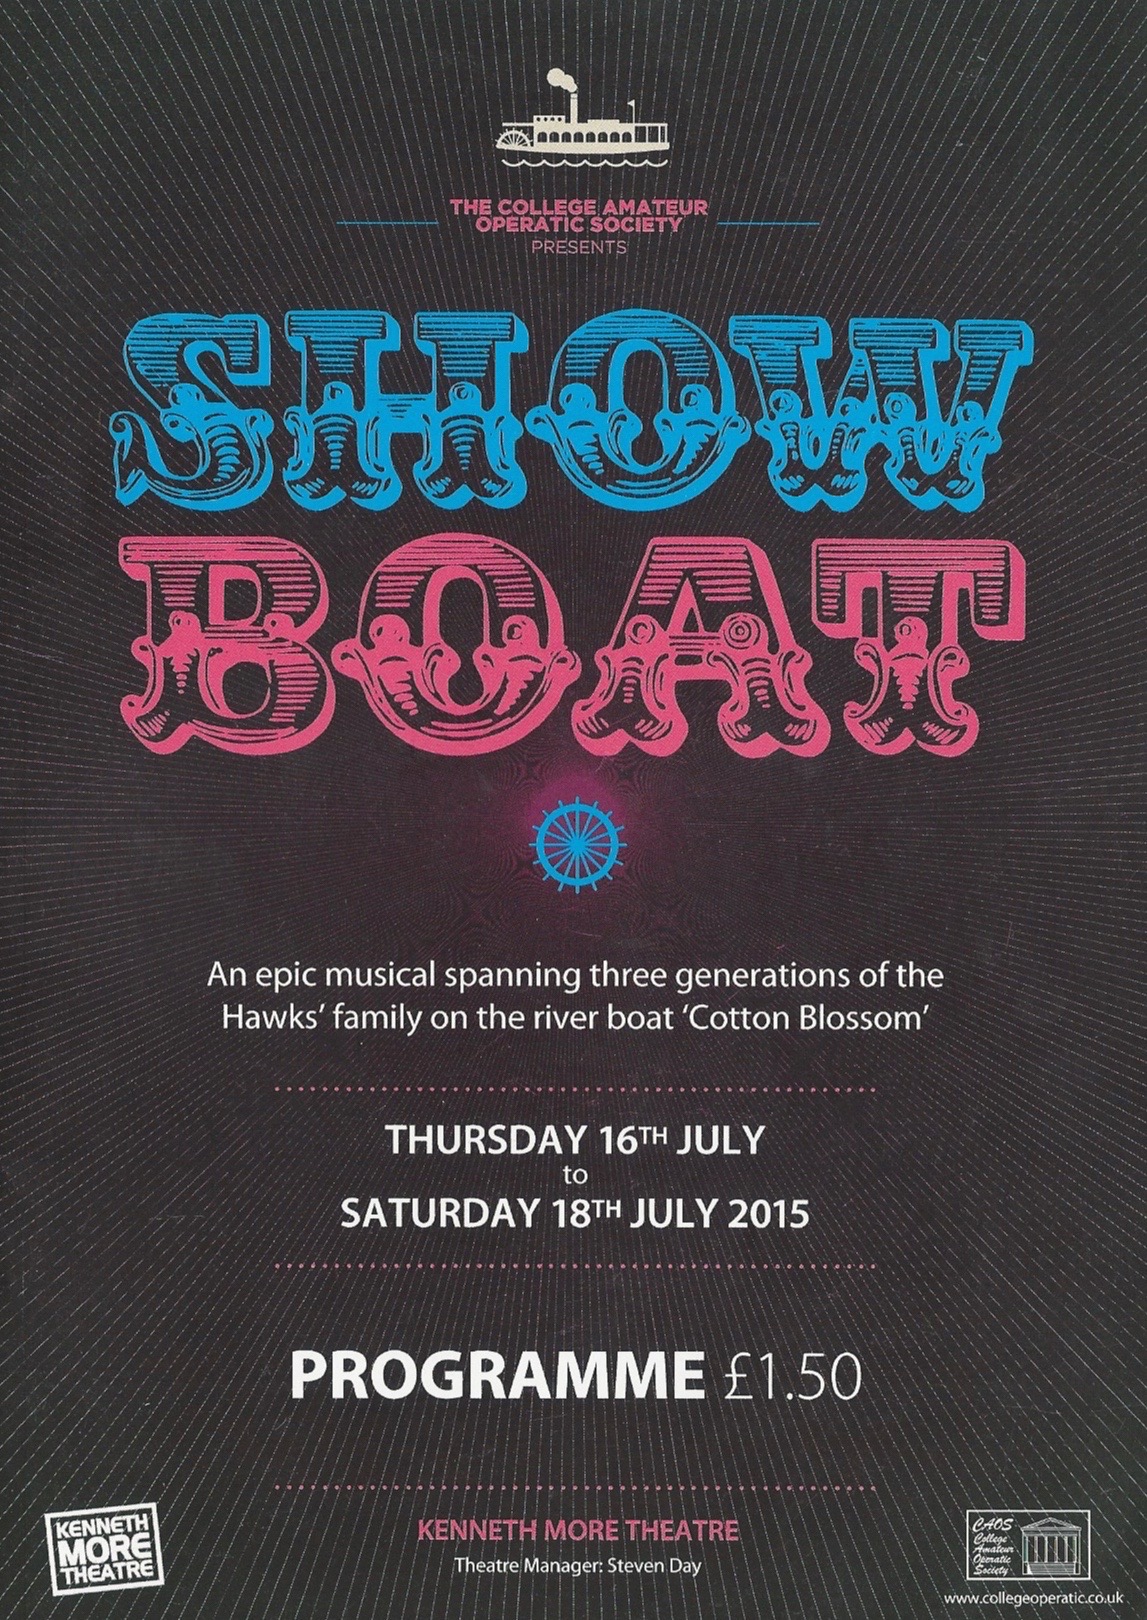 showboatprogram1